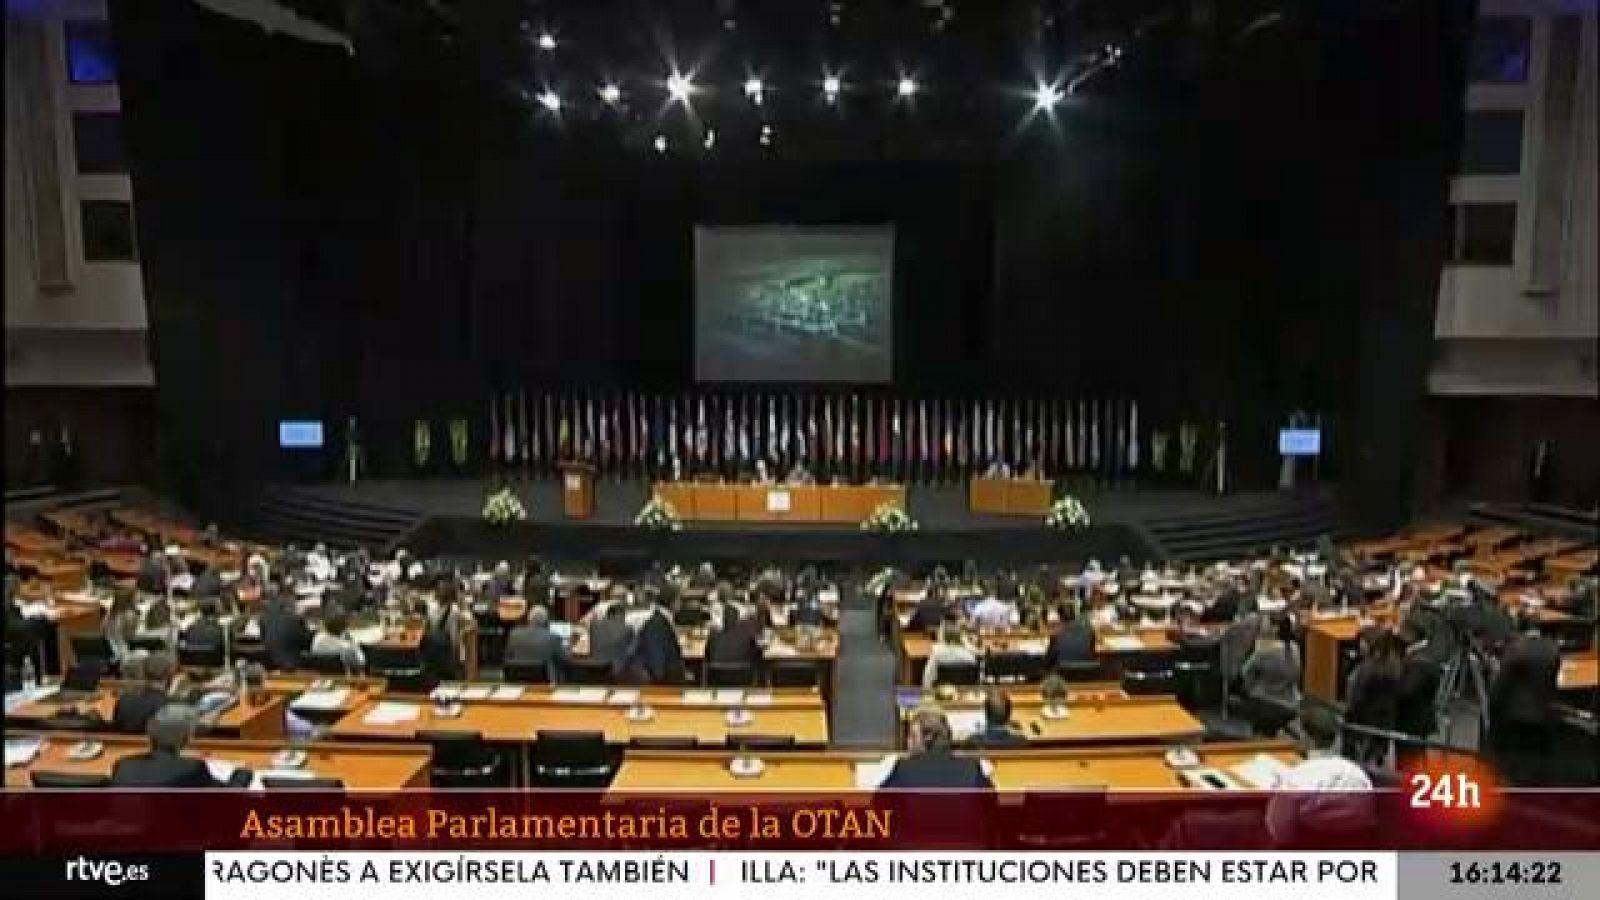 Parlamento - Conoce el parlamento - Qué es la Asamblea Parlamentaria de la OTAN - 02/07/2022